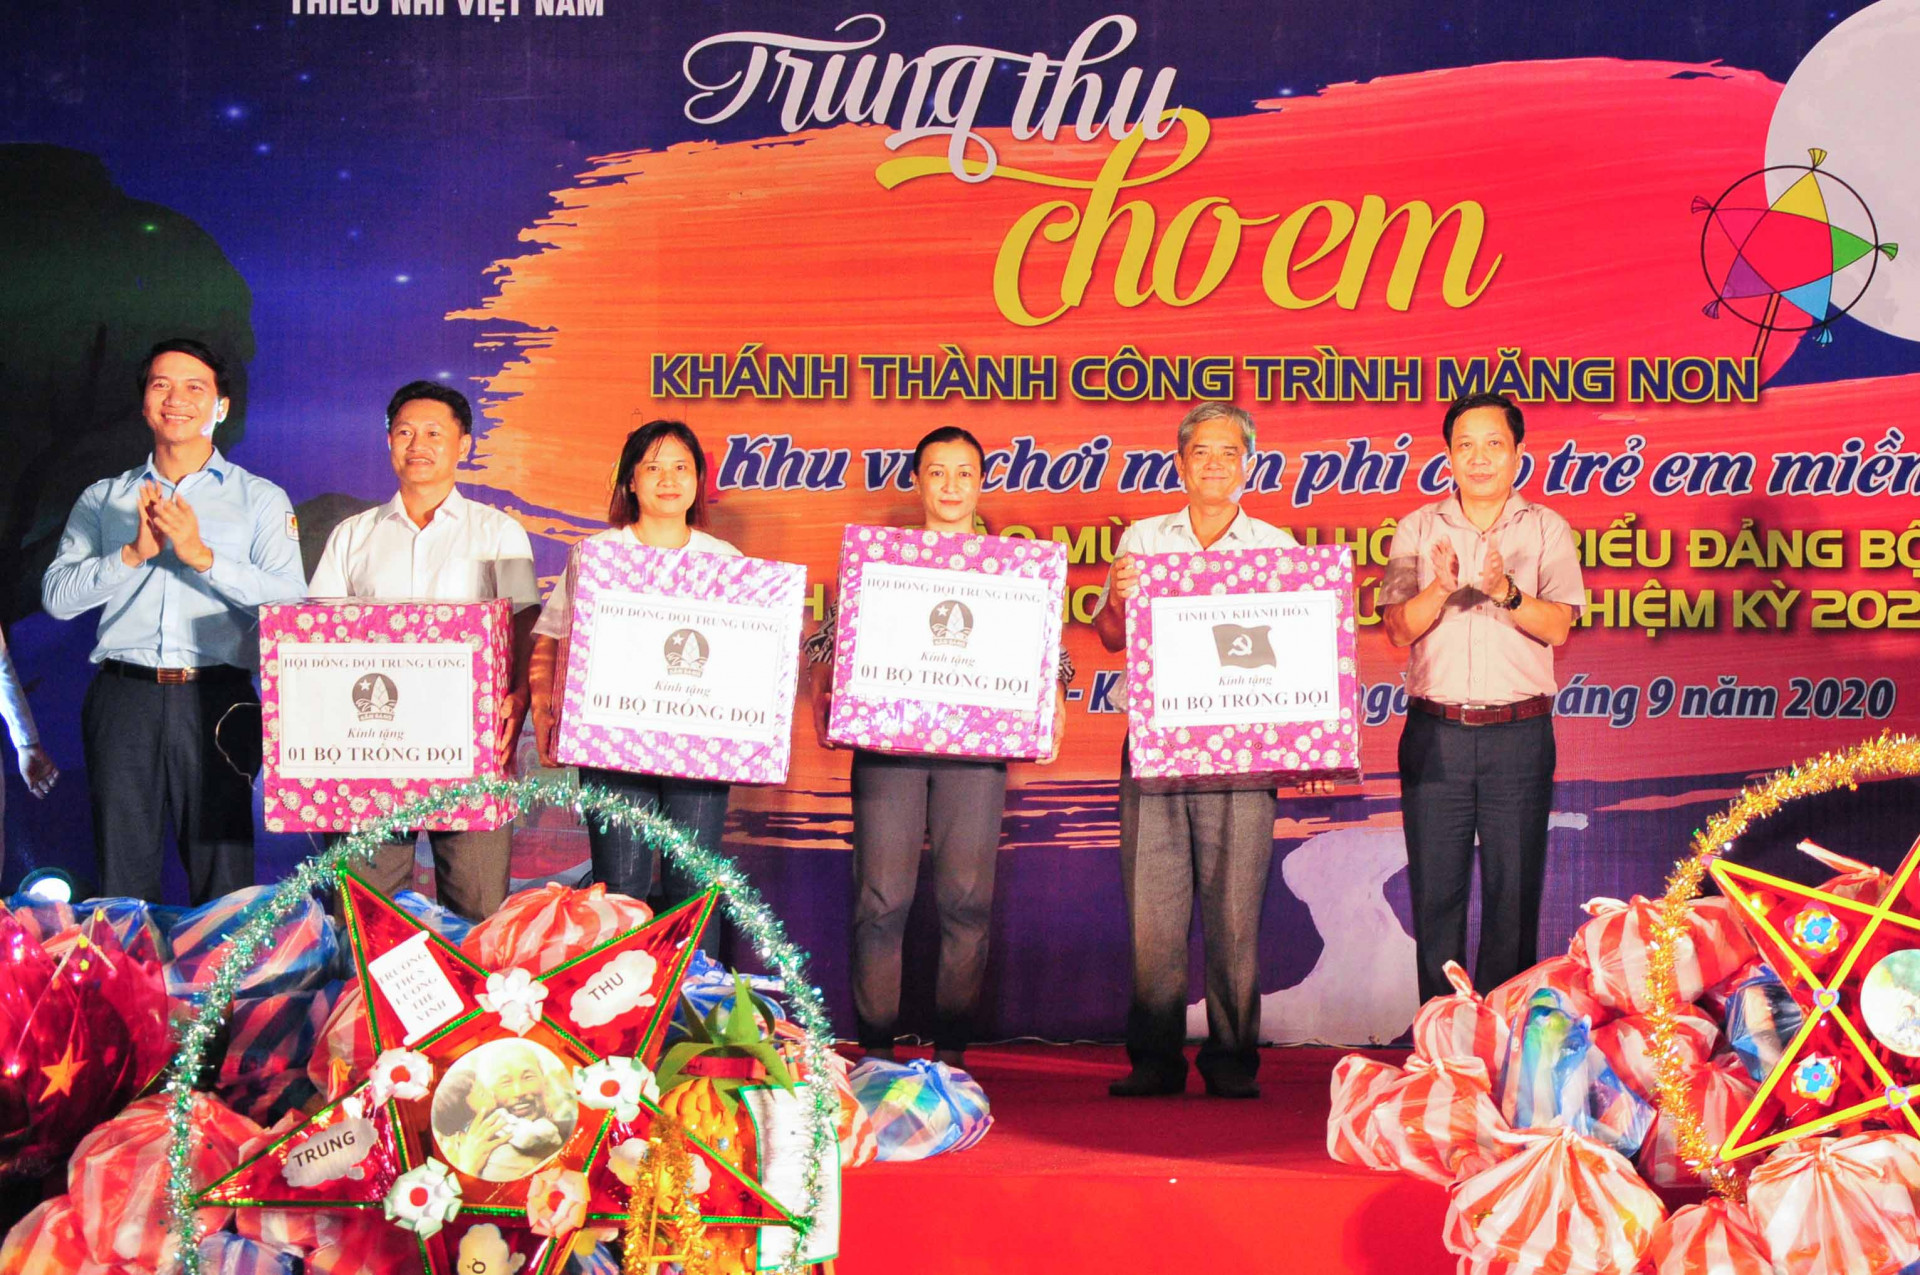 Ông Hà Quốc Trị cùng lãnh đạo Hội đồng Đội Trung ương trao tặng các bộ trống Đội cho các liên đội trường học trên địa bàn huyện Khánh Vĩnh